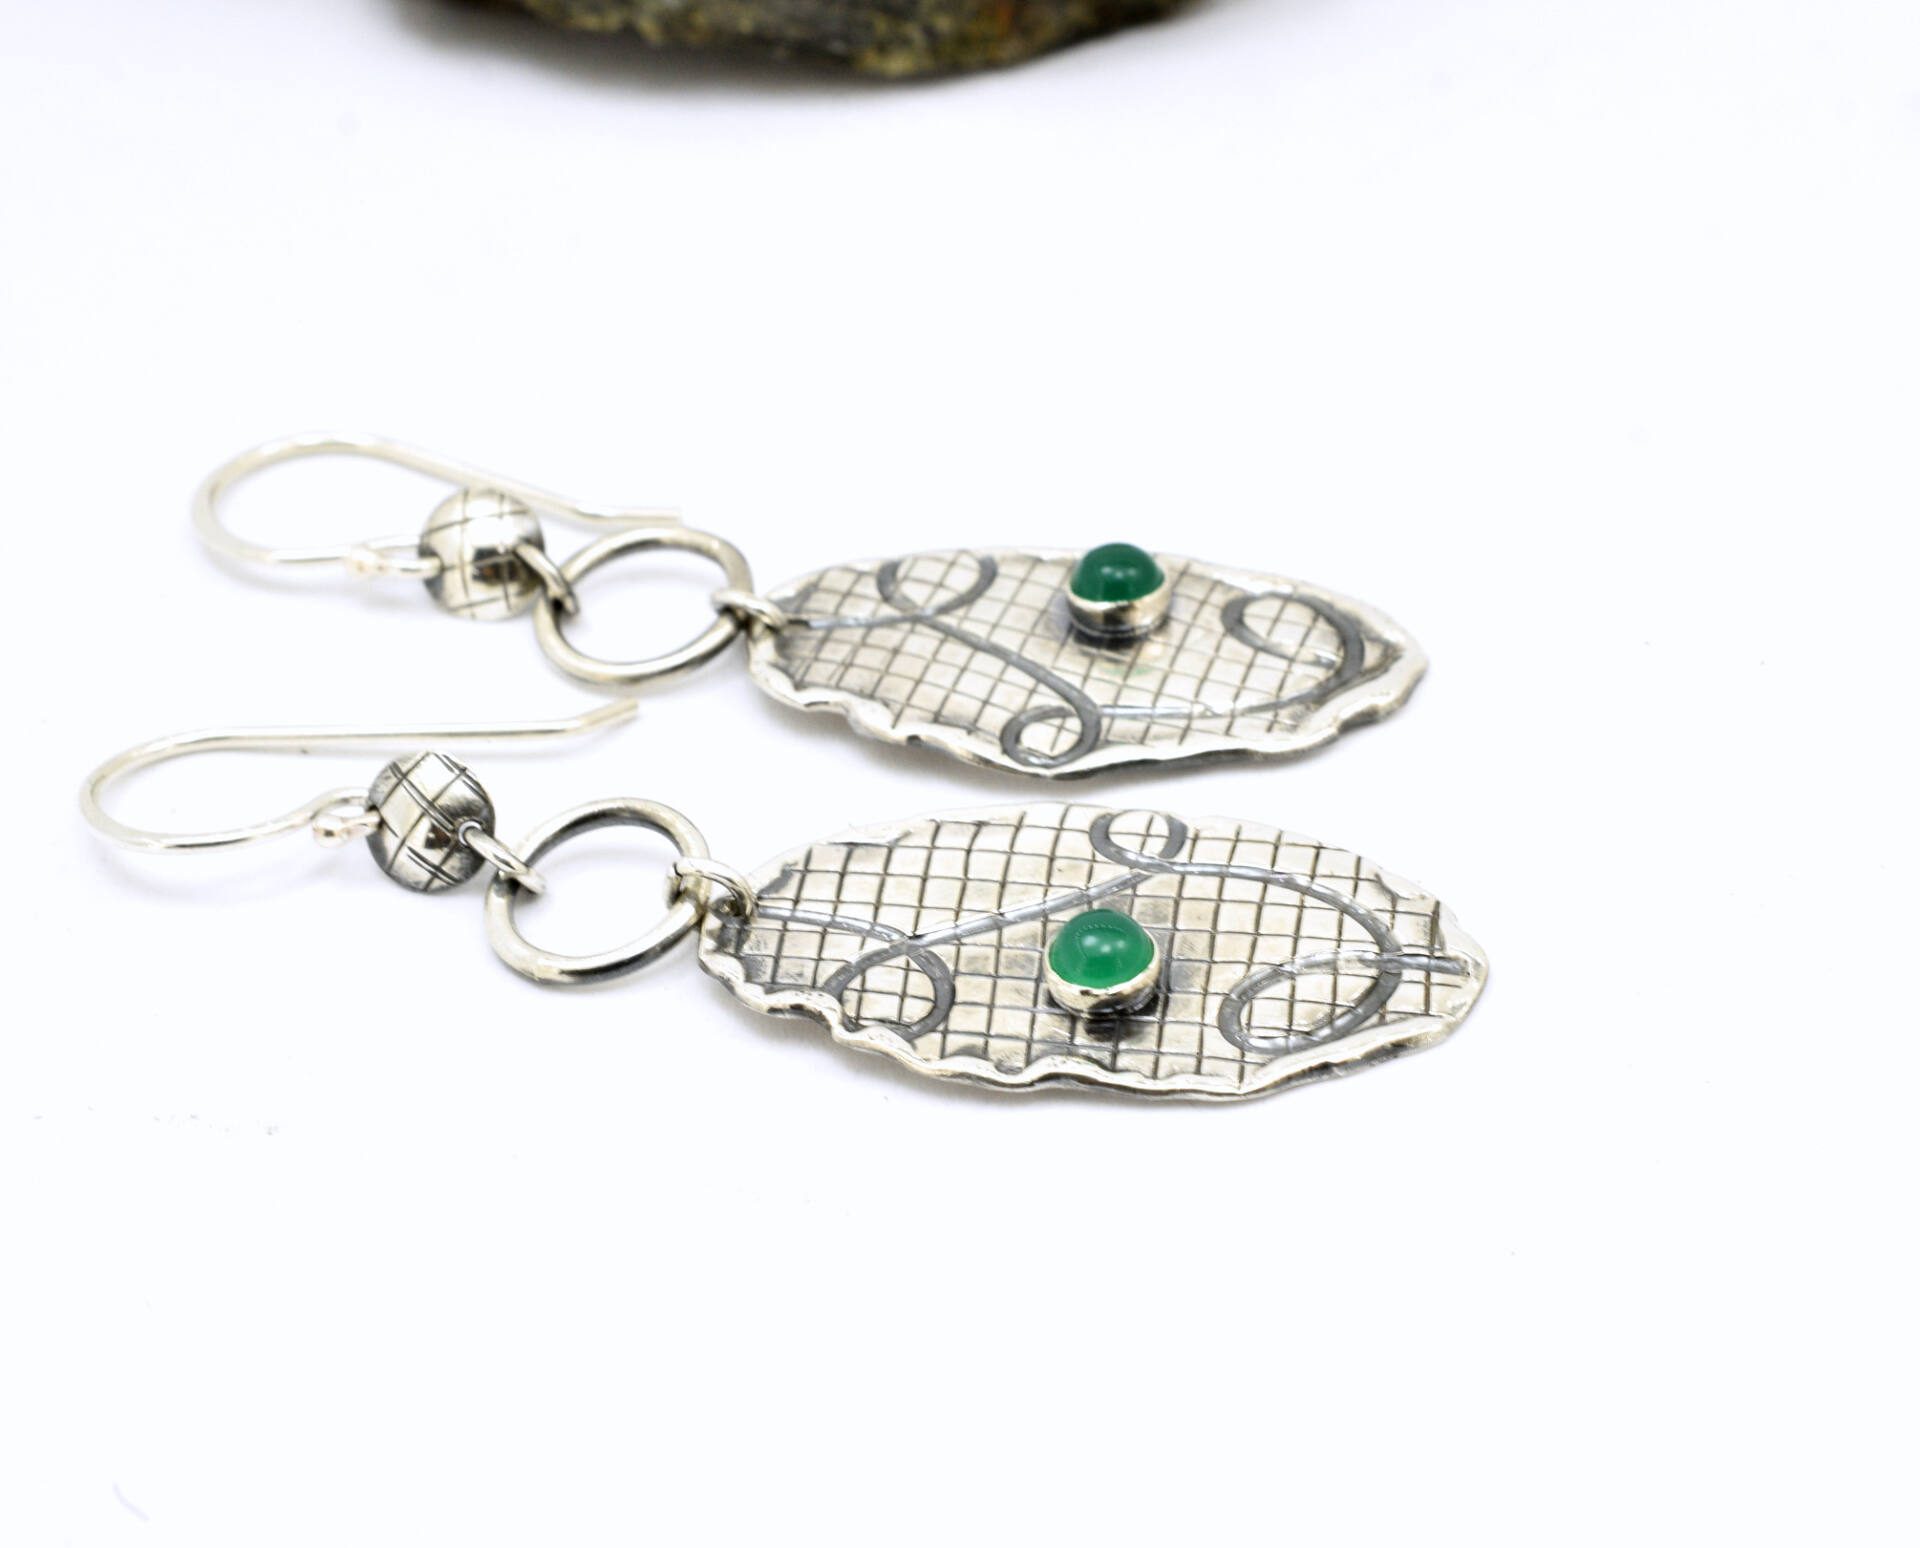 Green onyx earrings from sterling silver